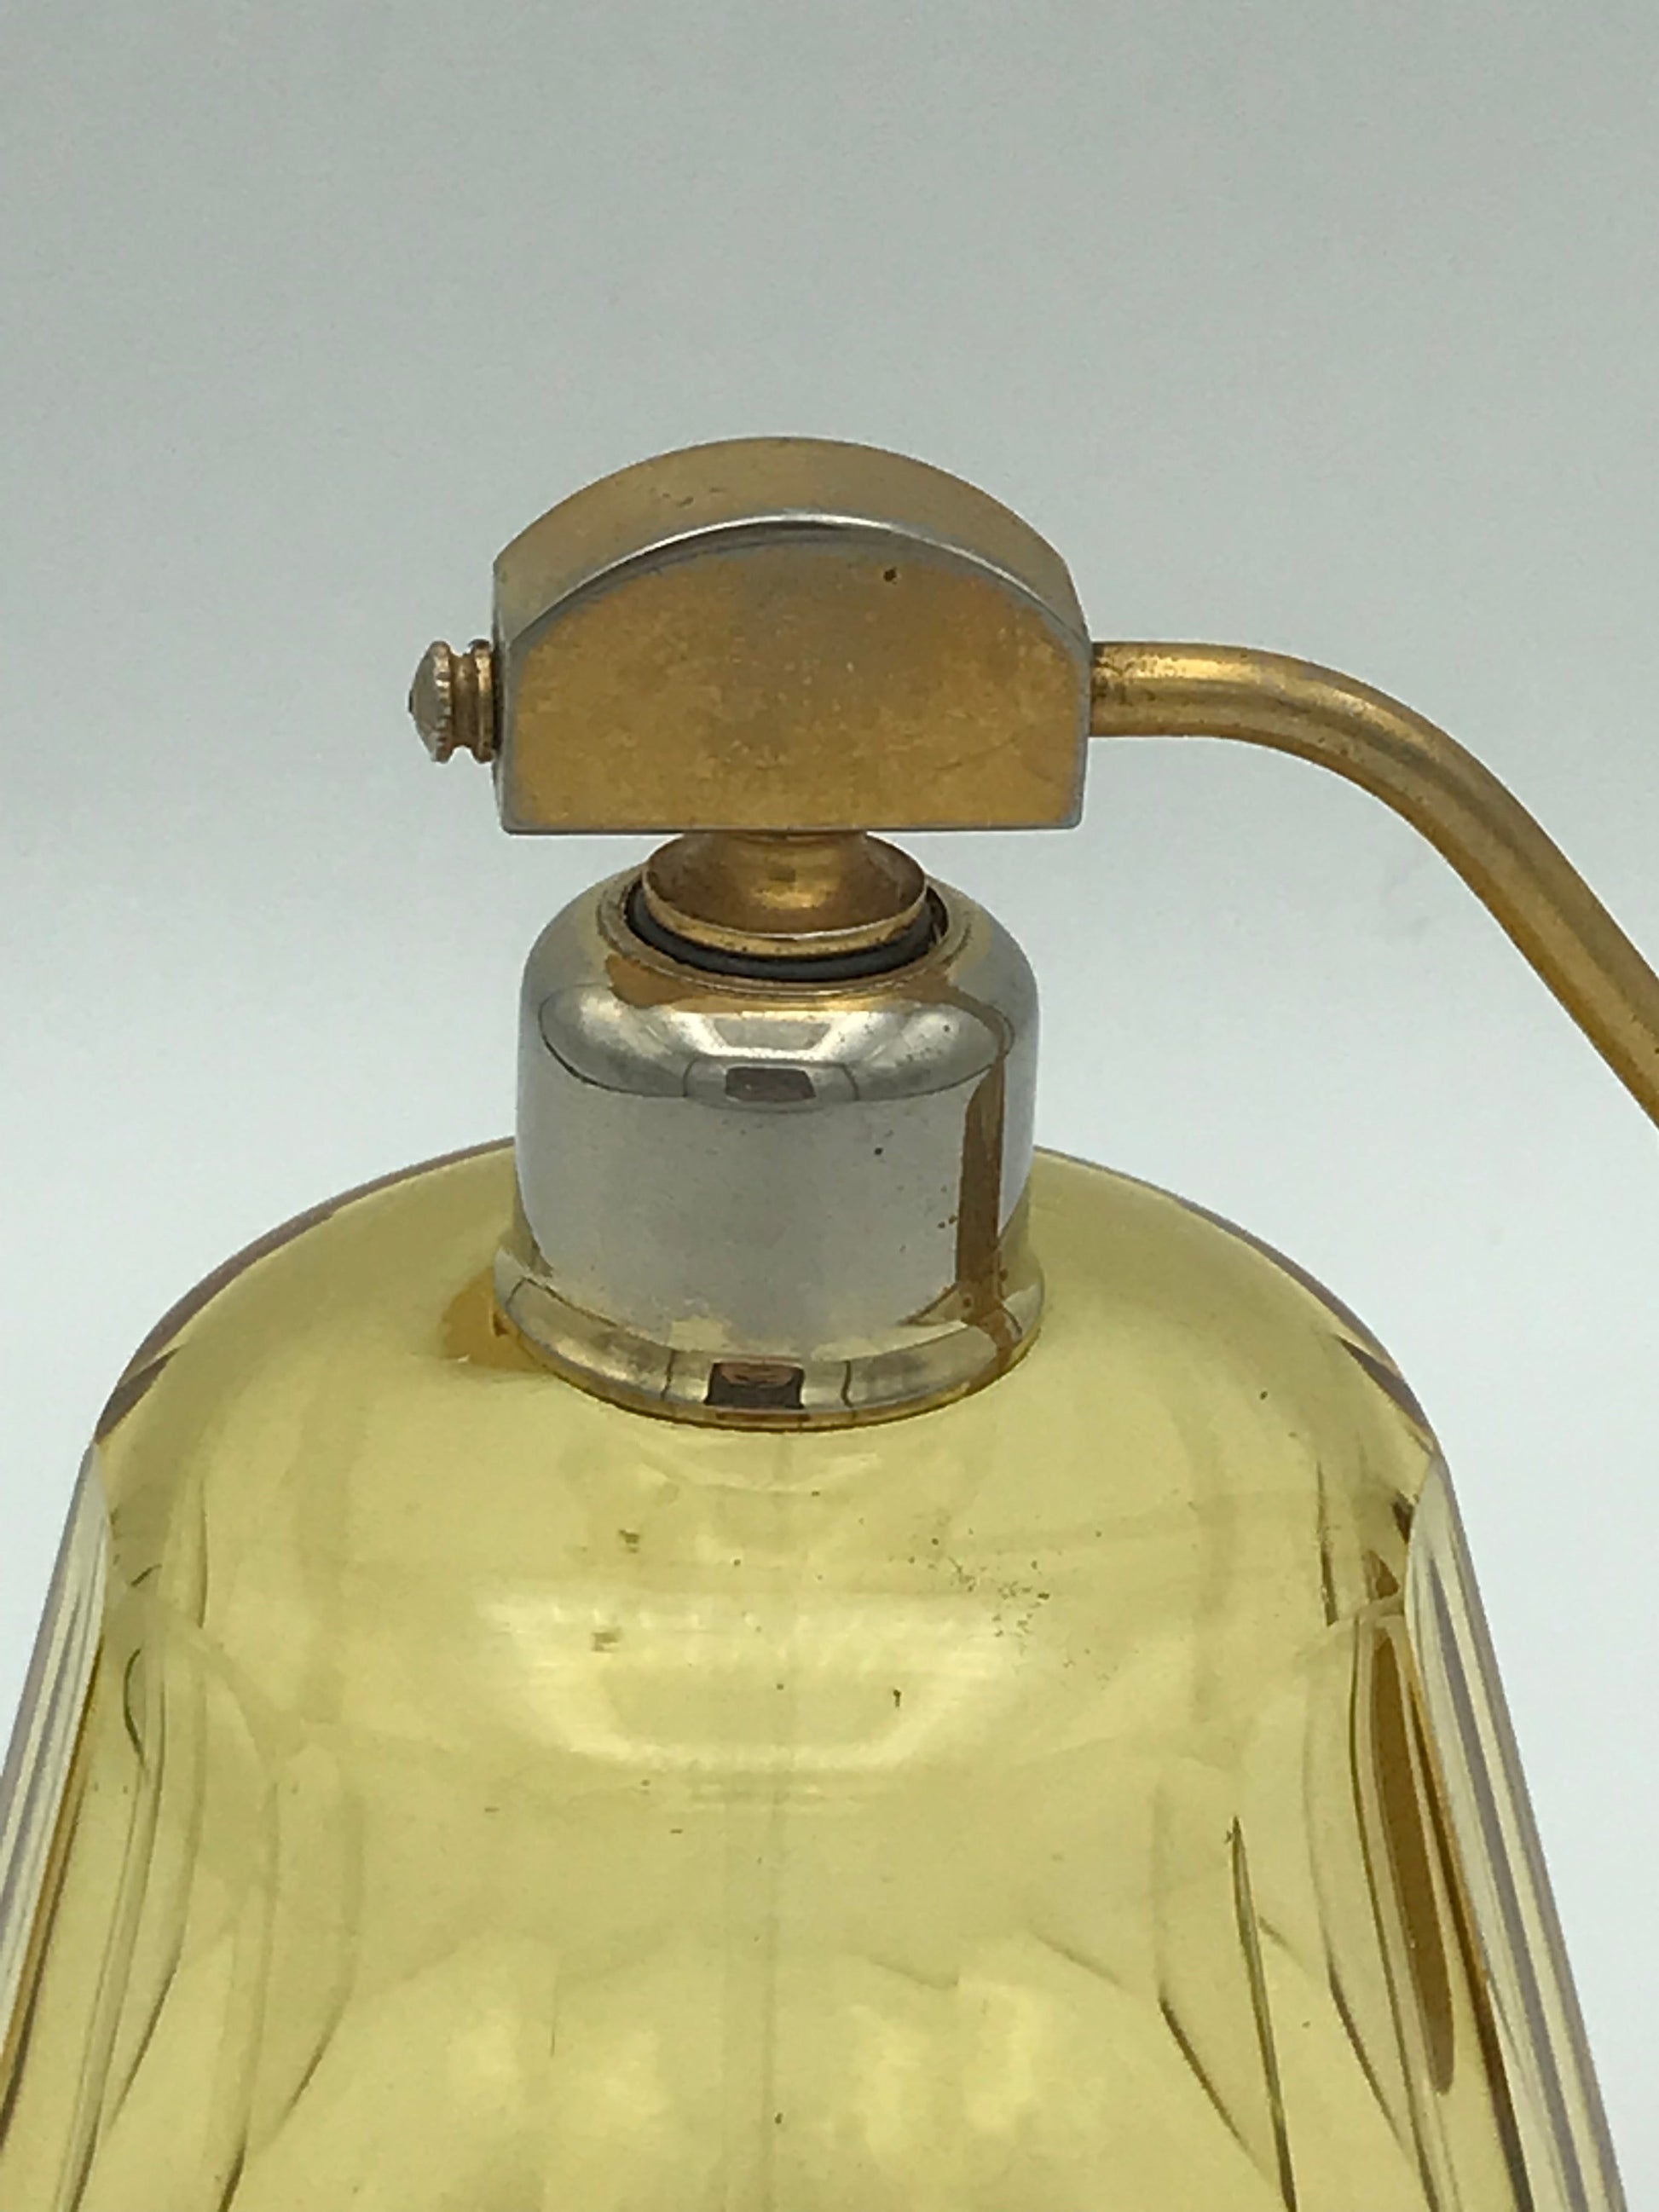 Vaporisateur à parfum cristal de Bohème - Premium Vaporisateur à parfum from Atelier Guillot - Just €250! Shop now at Atelier Guillot